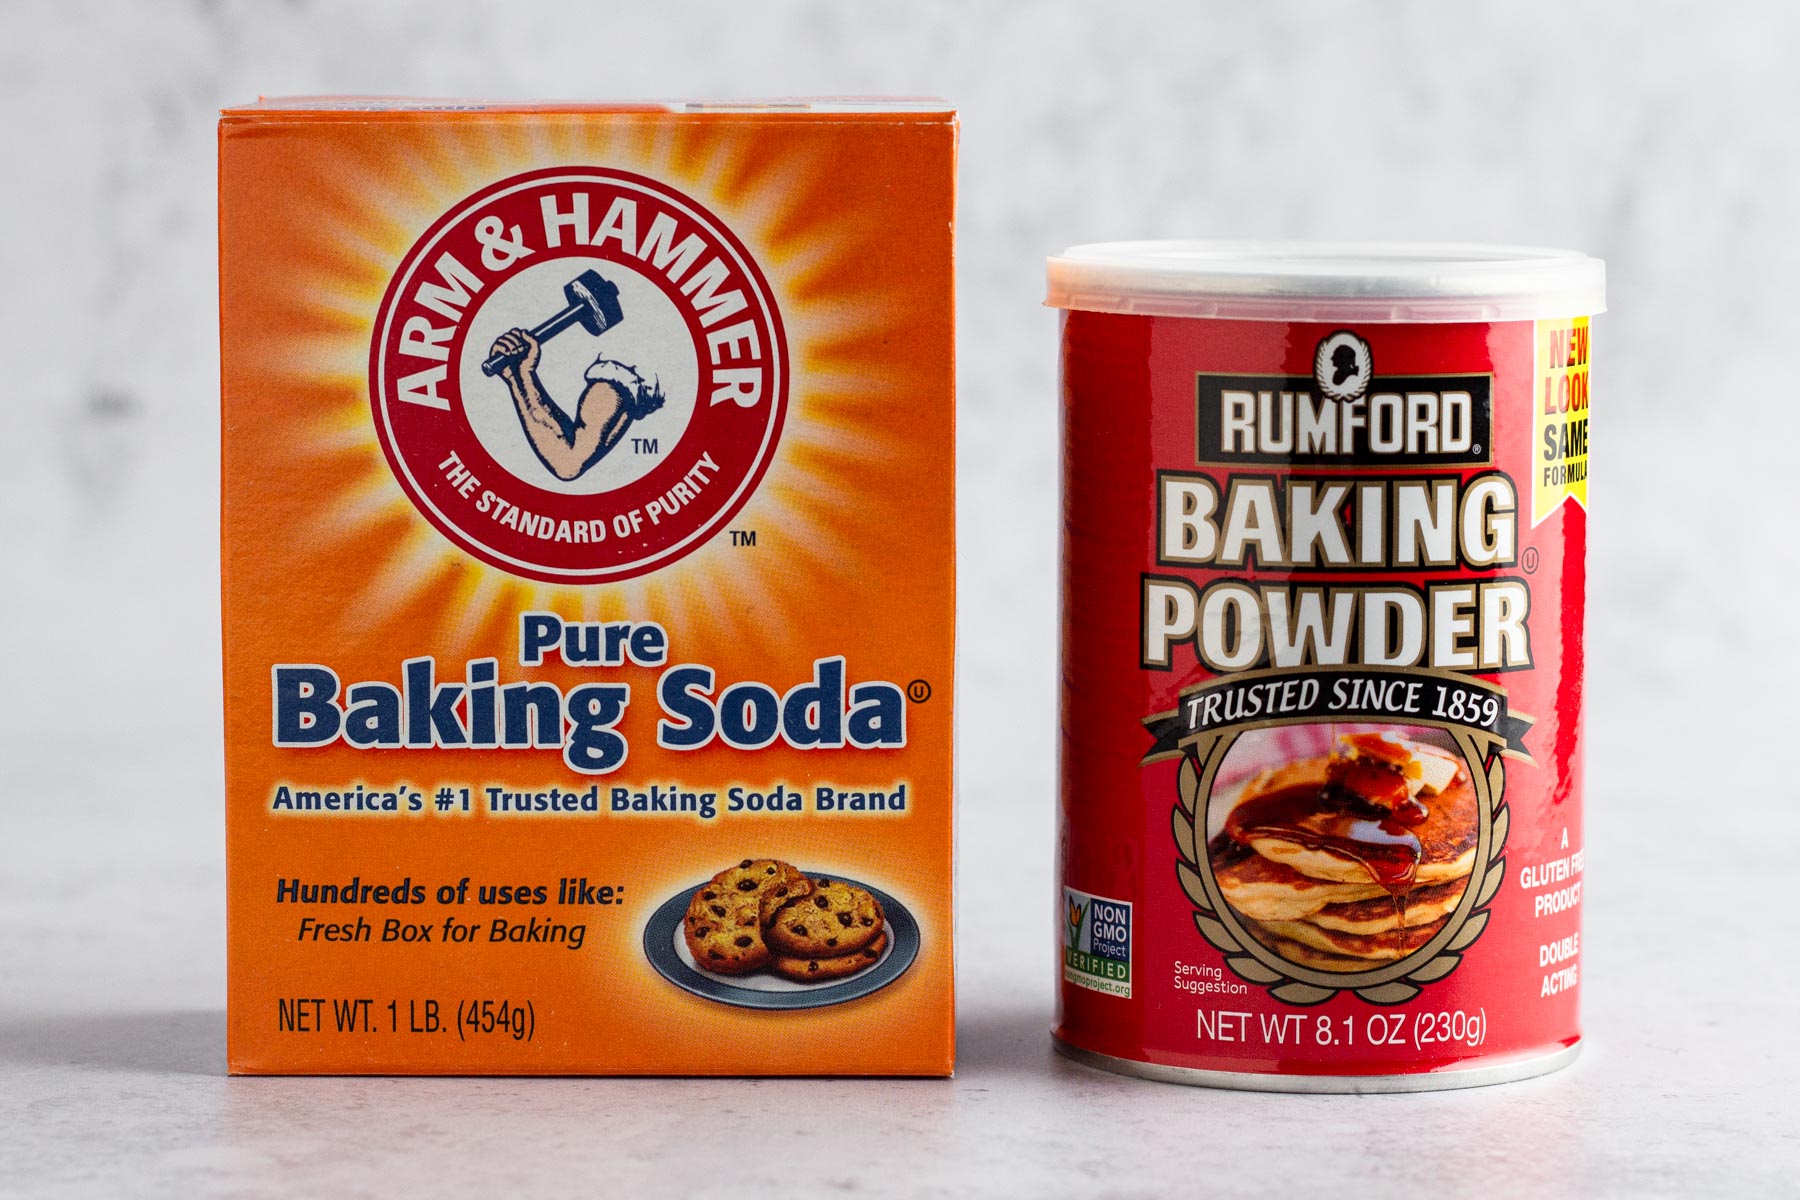 Baking Powder and Baking Soda